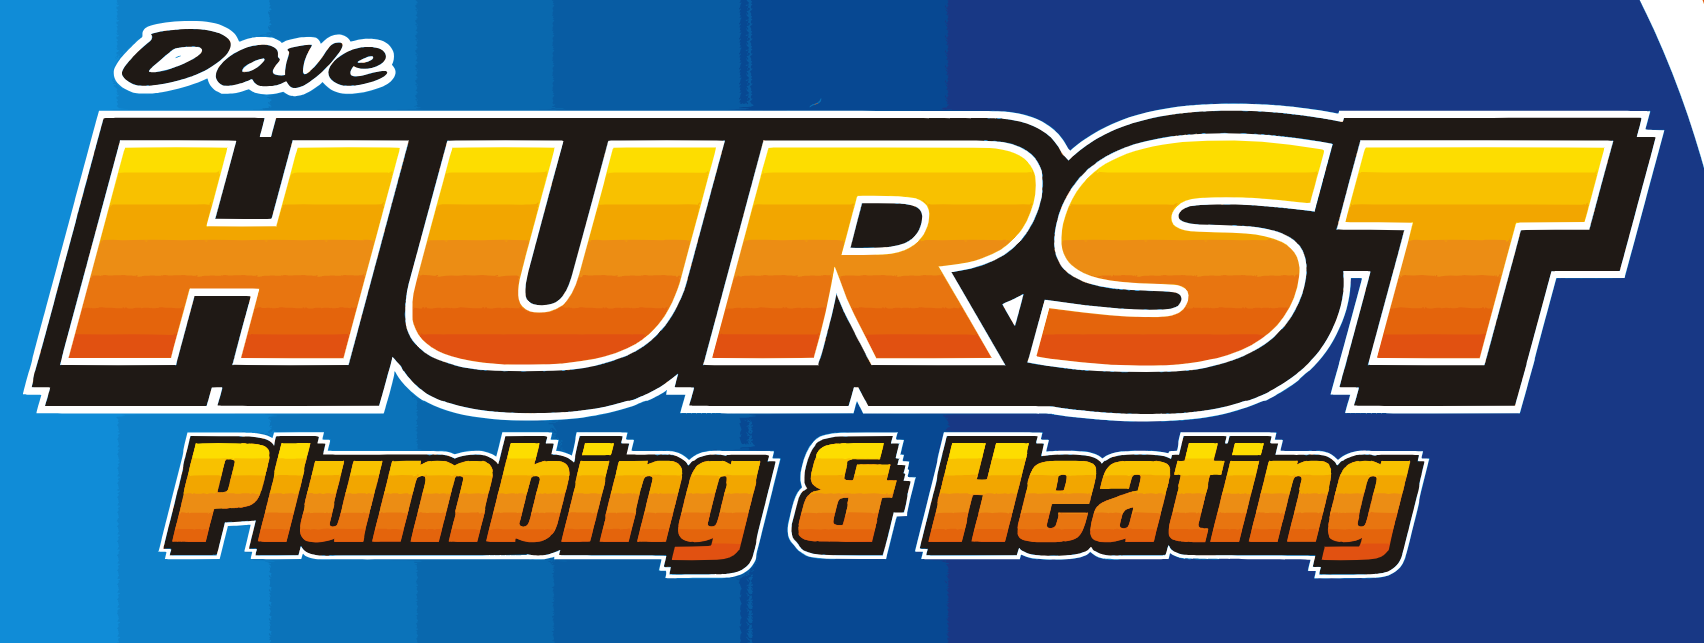 Hurst Plumbing Logo.png